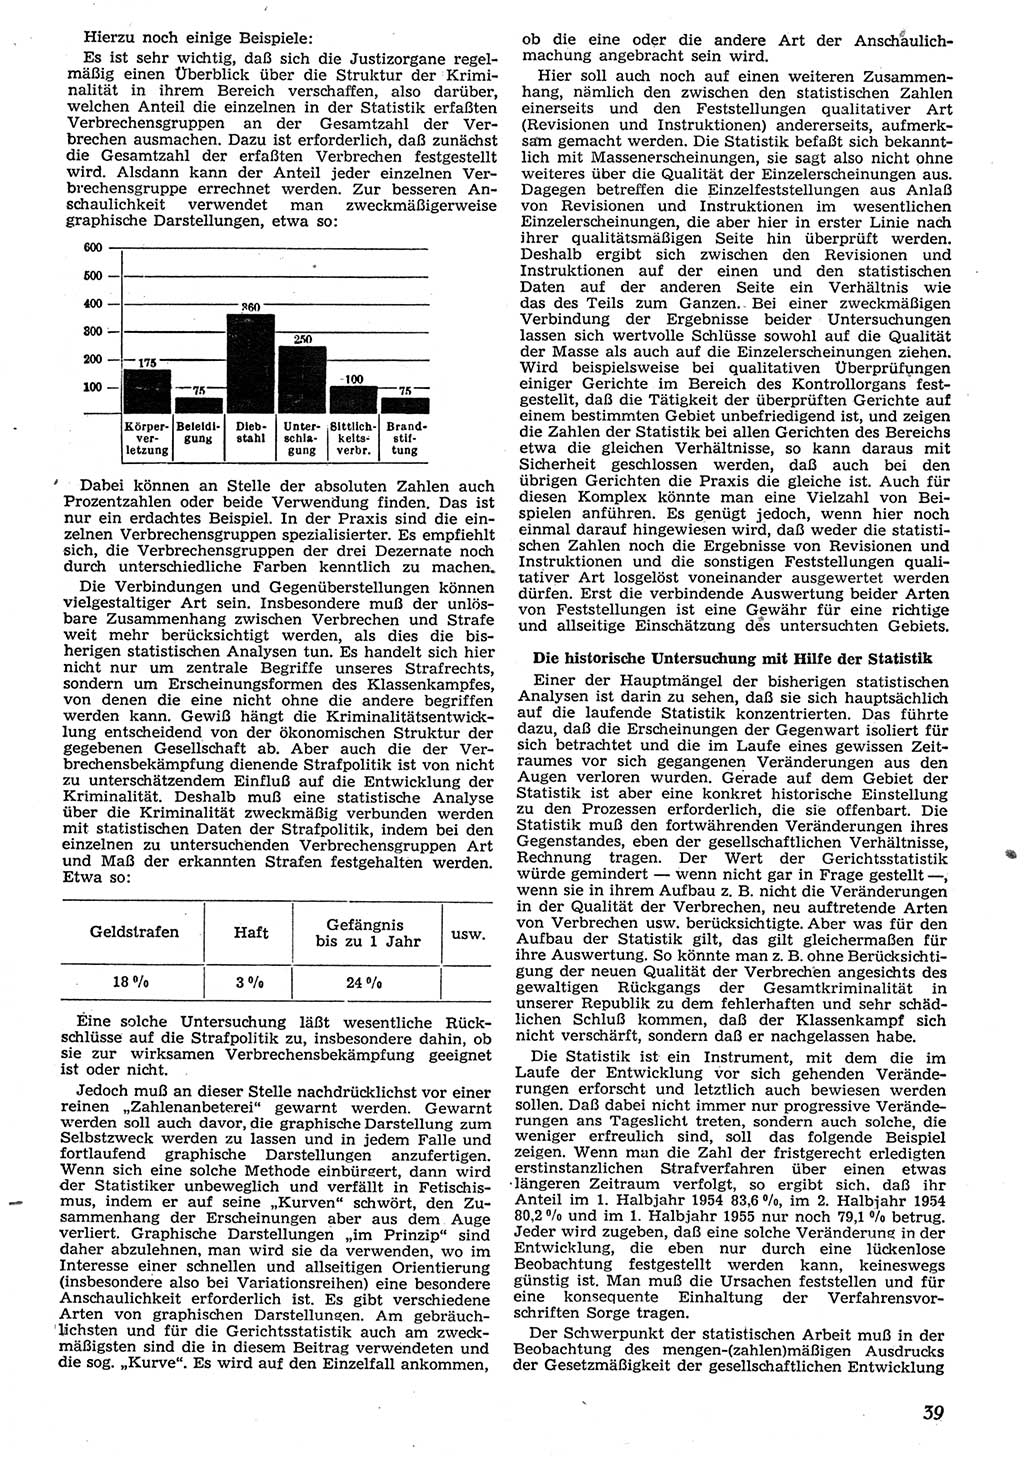 Neue Justiz (NJ), Zeitschrift für Recht und Rechtswissenschaft [Deutsche Demokratische Republik (DDR)], 10. Jahrgang 1956, Seite 39 (NJ DDR 1956, S. 39)